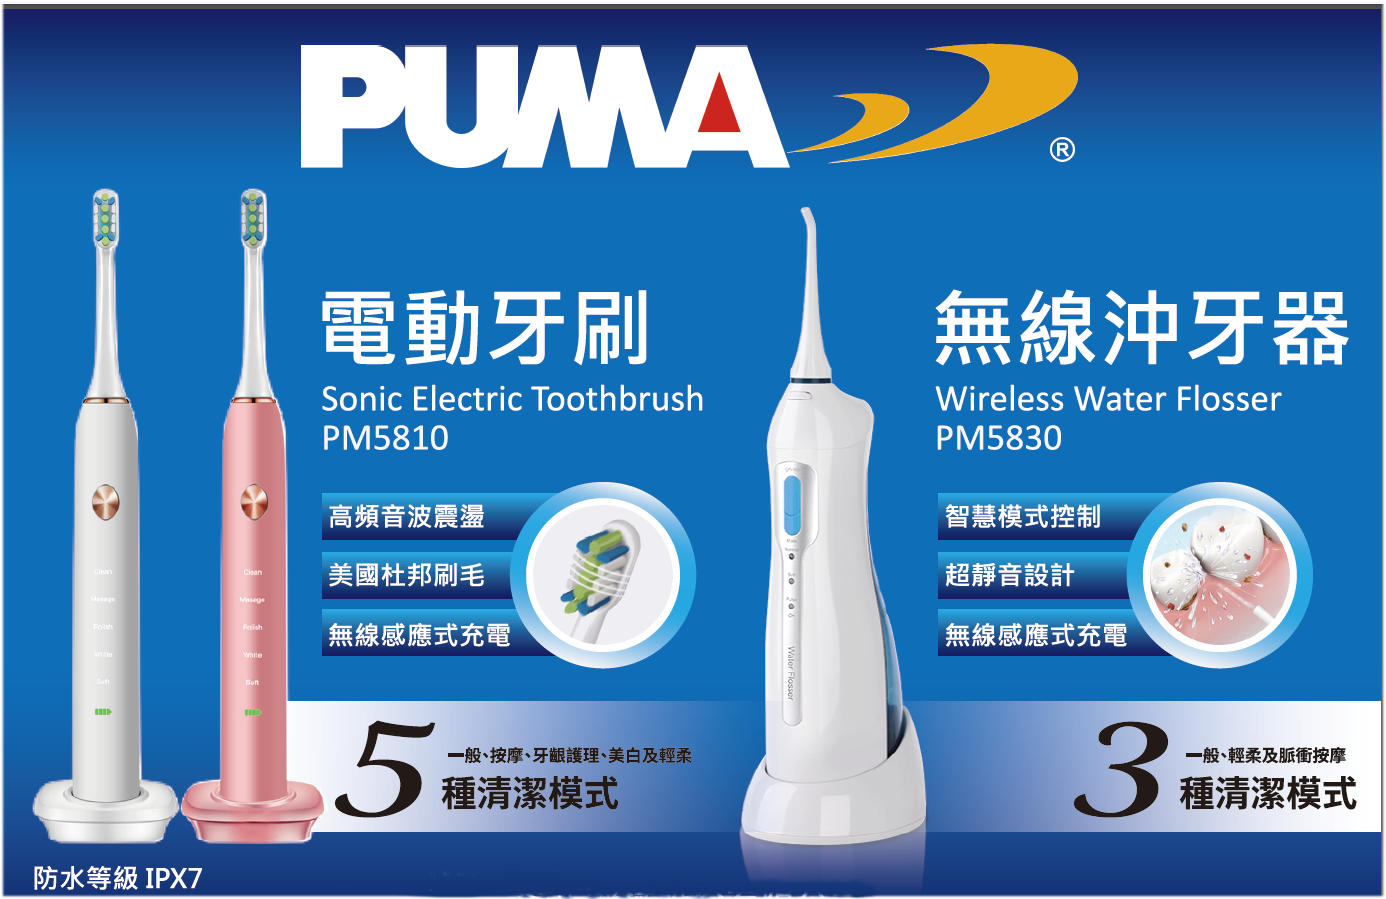 Puma TAKATA PM5812超音波電動牙刷+ Puma TAKATA PM5830沖牙器一套組